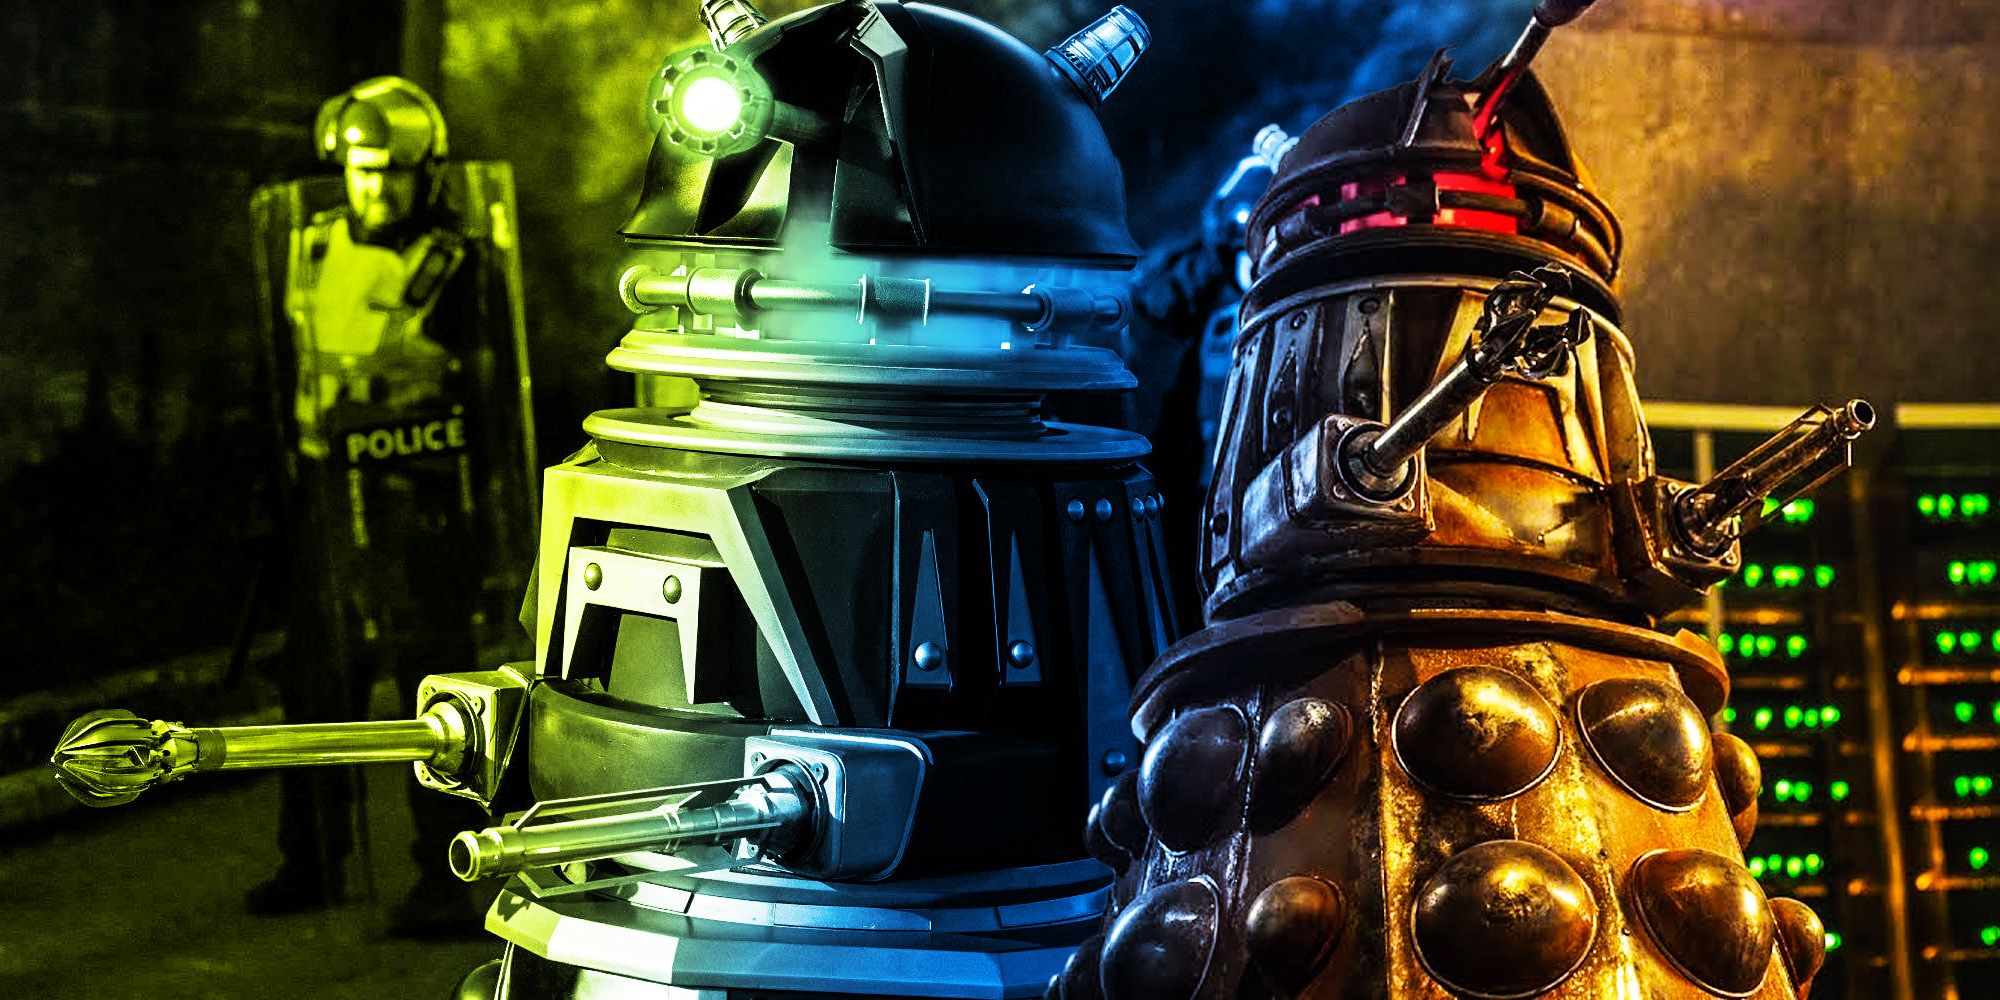 Doctor who explains how a Dalek exterminates